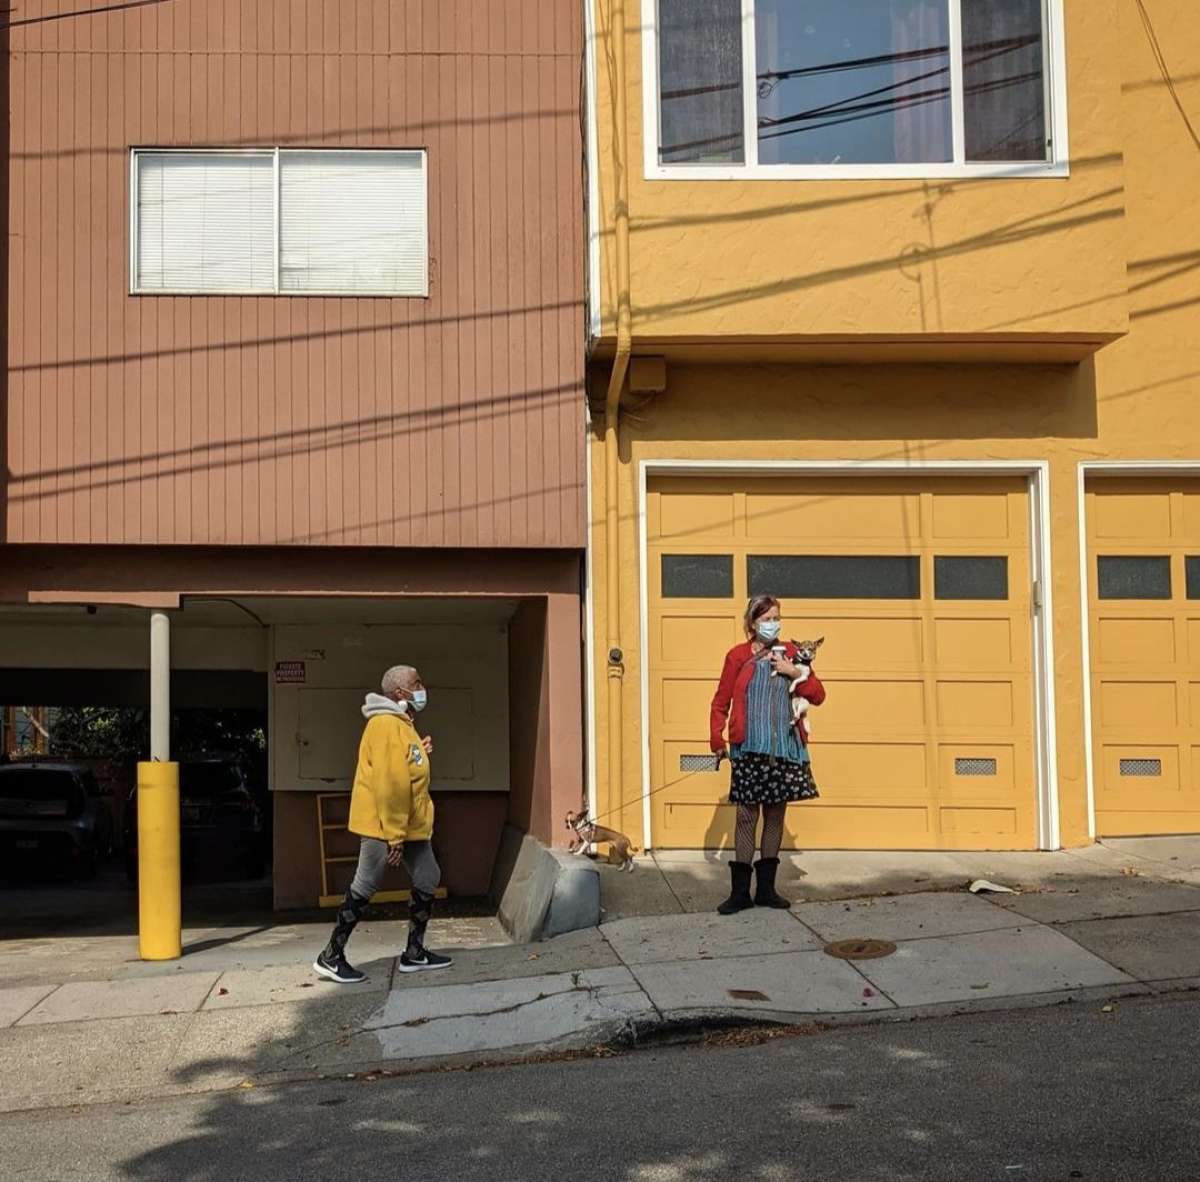 El fotógrafo Sage Akaboshi siempre tiene una cámara en la mano para capturar lo que ve en las calles de San Francisco. Comparte sus imágenes en su Instagram, @pueo_in_sf.